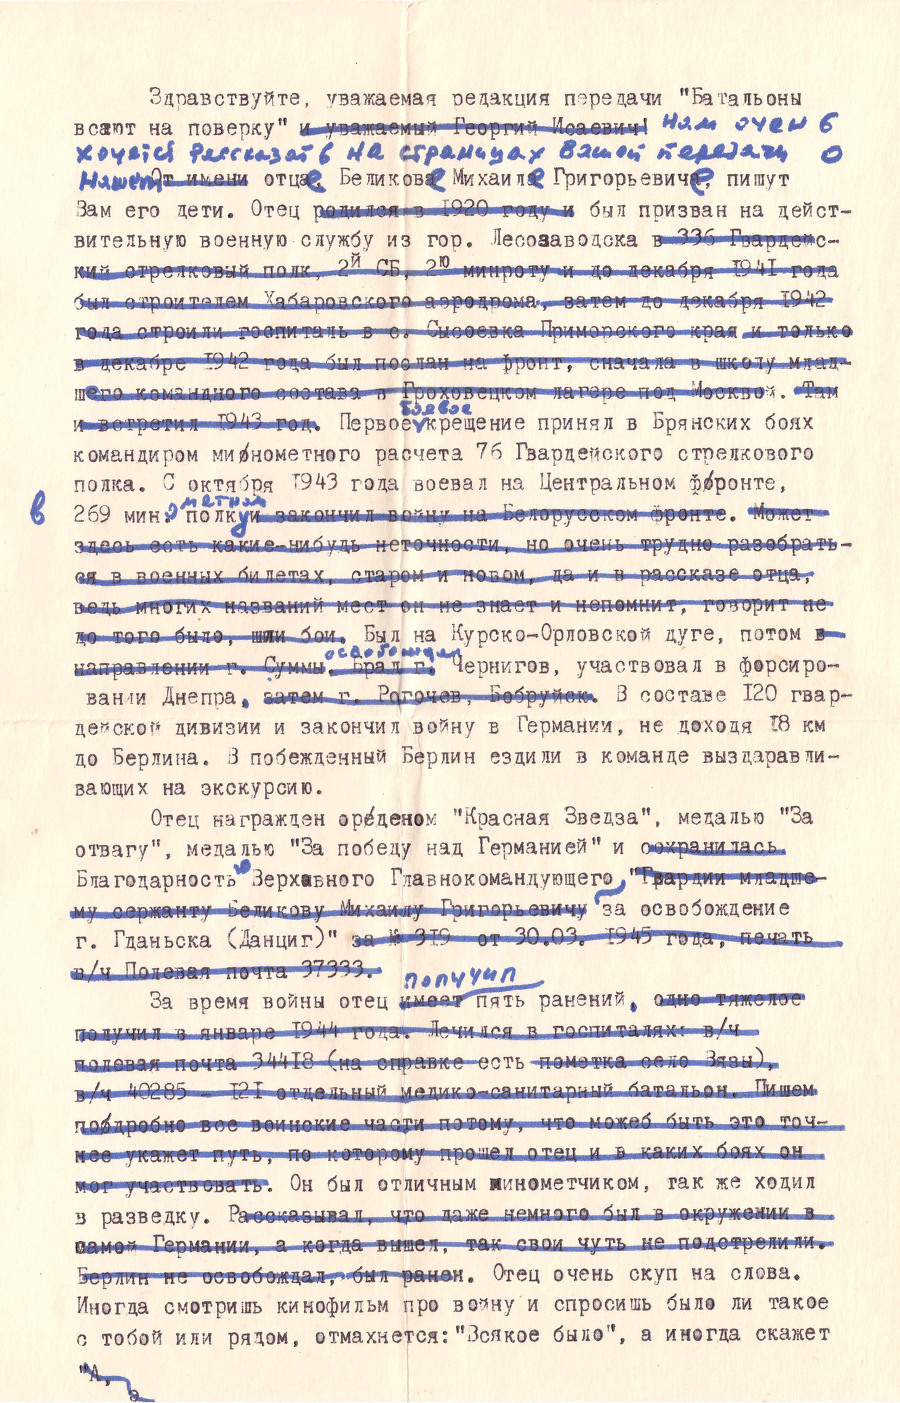 Беликов МПК14145-18 Письмо Громову Г.И. от 24.12.1986 г. стр. 1